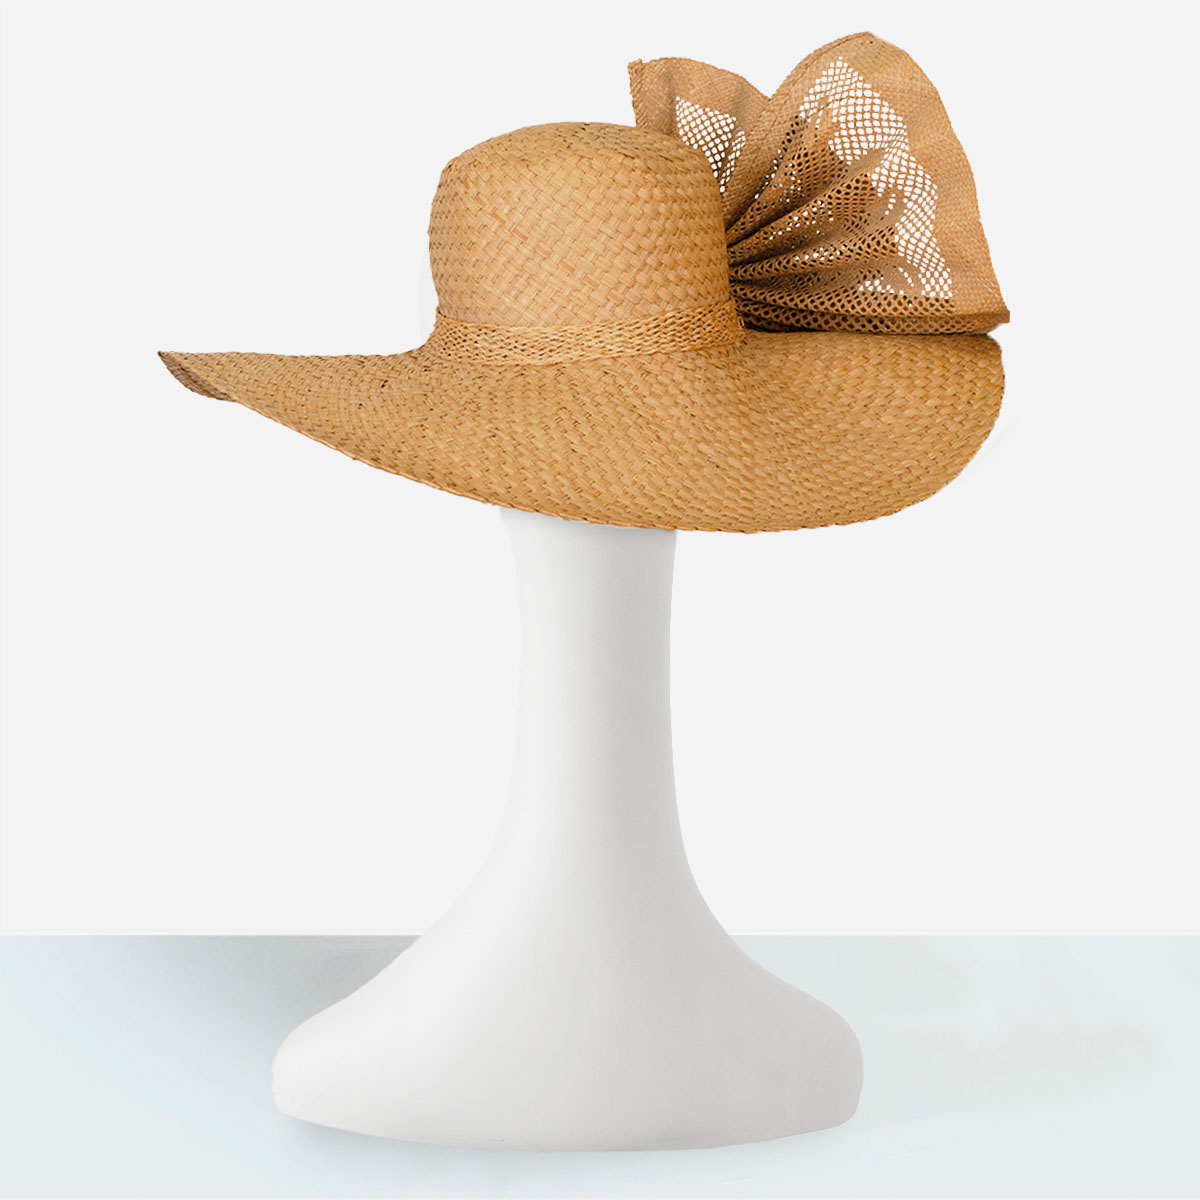 Vintage French Straw Hat, Wide Brim